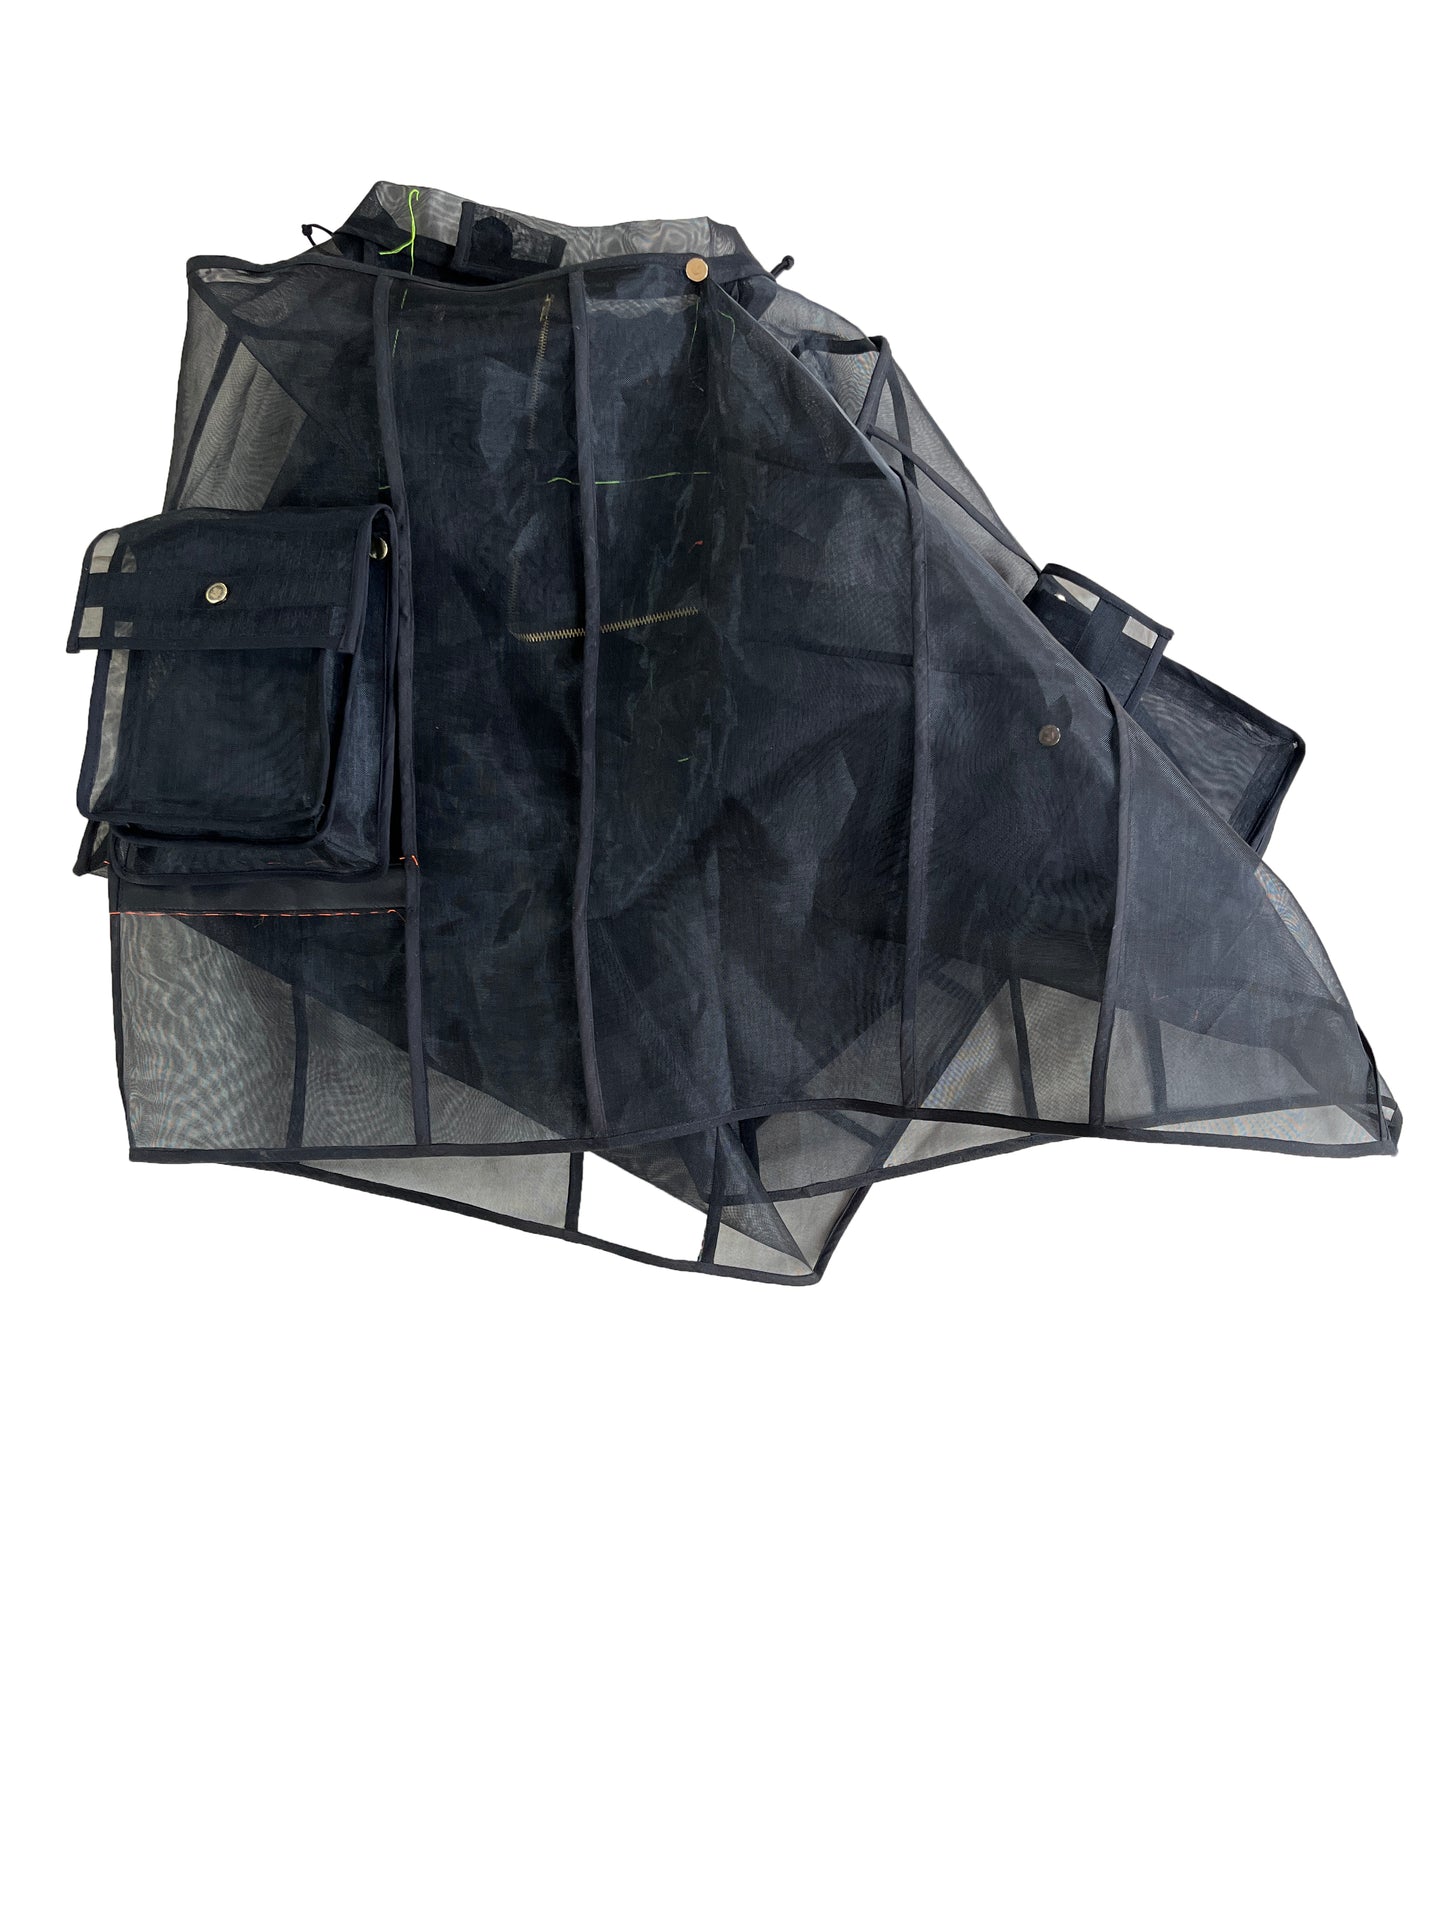 Zibbon Market Bag Skirt